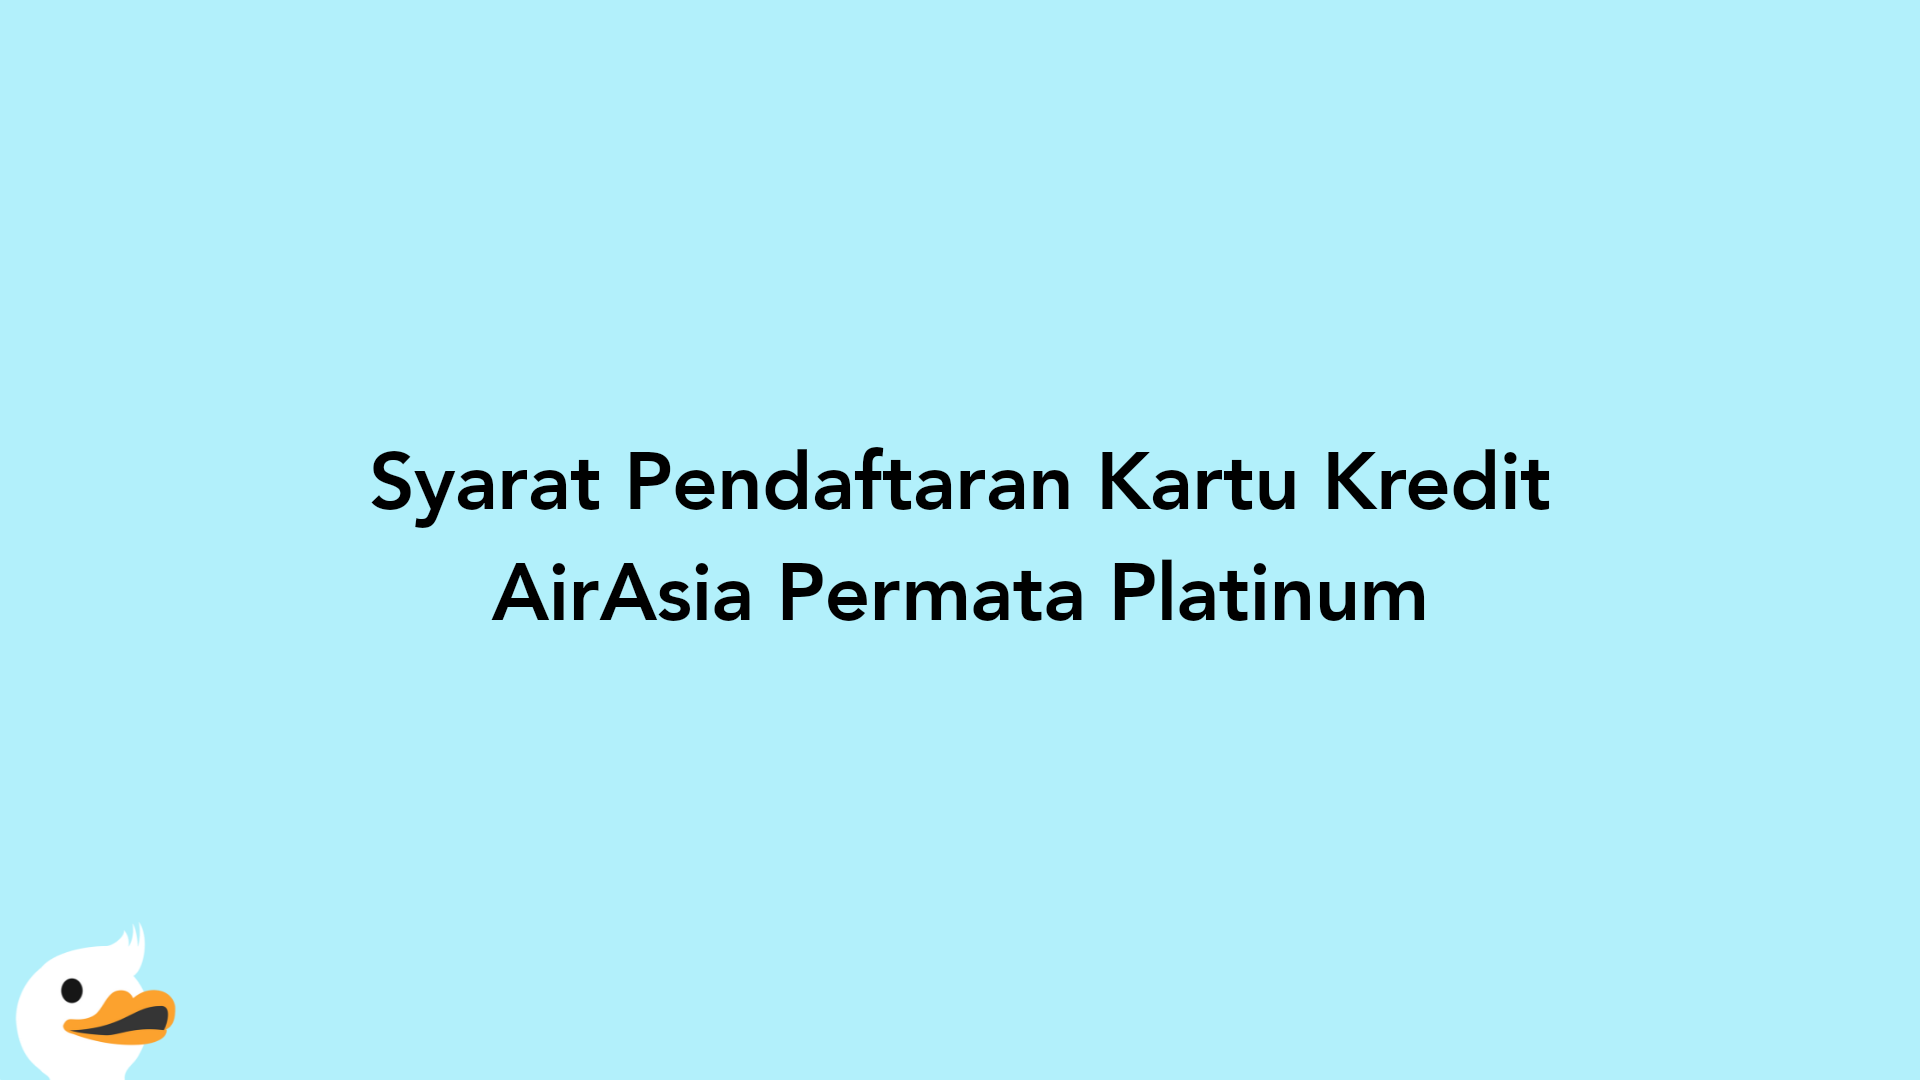 Syarat Pendaftaran Kartu Kredit AirAsia Permata Platinum